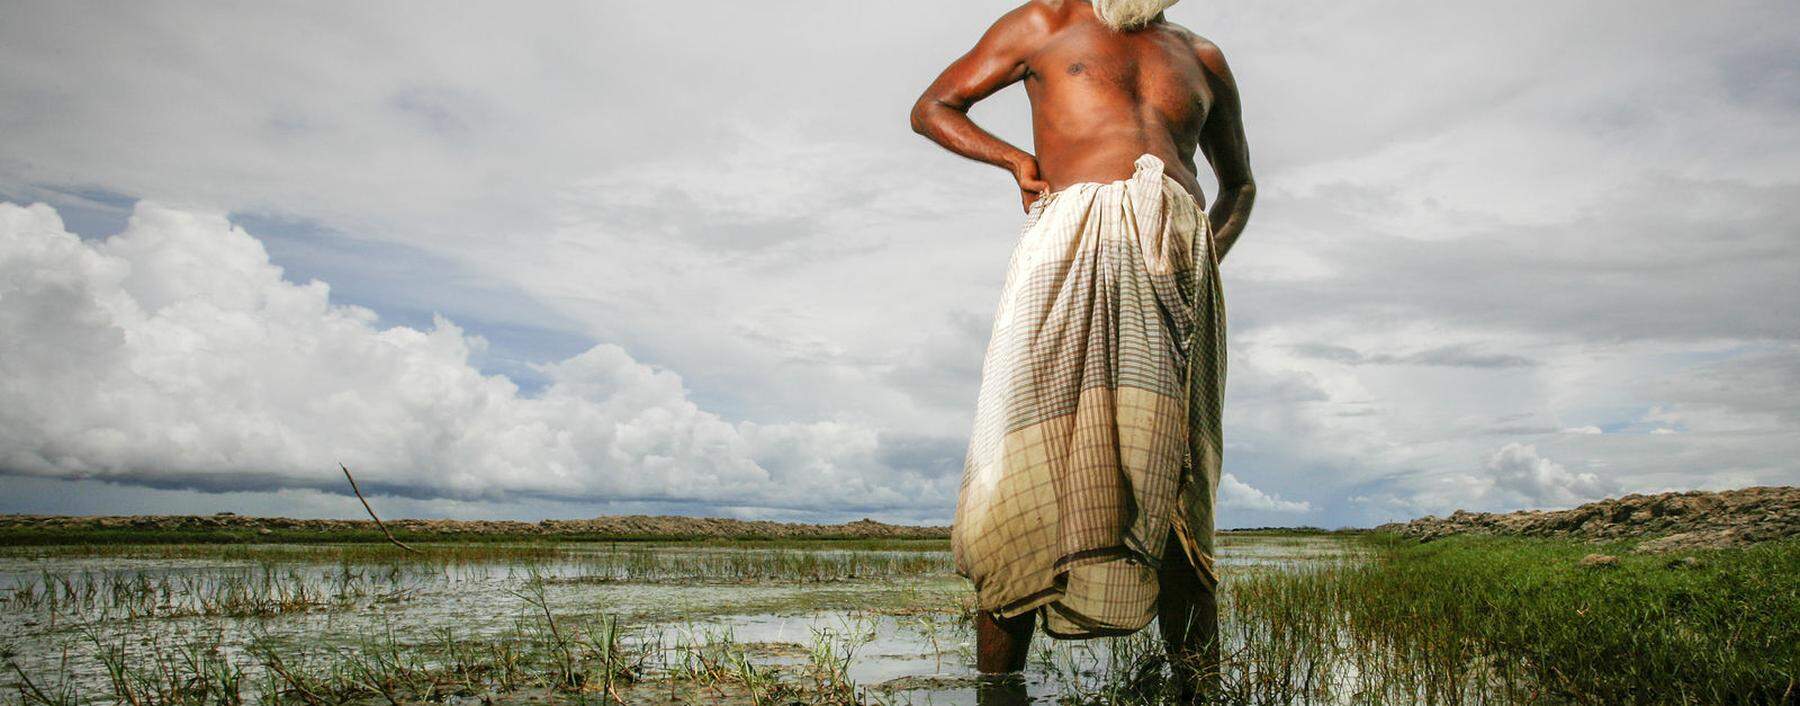 Abdul Majed pflanzte früher in Bangladesch Reis an. Seit das Wasser zu salzig geworden ist, zieht er stattdessen Shrimps.  